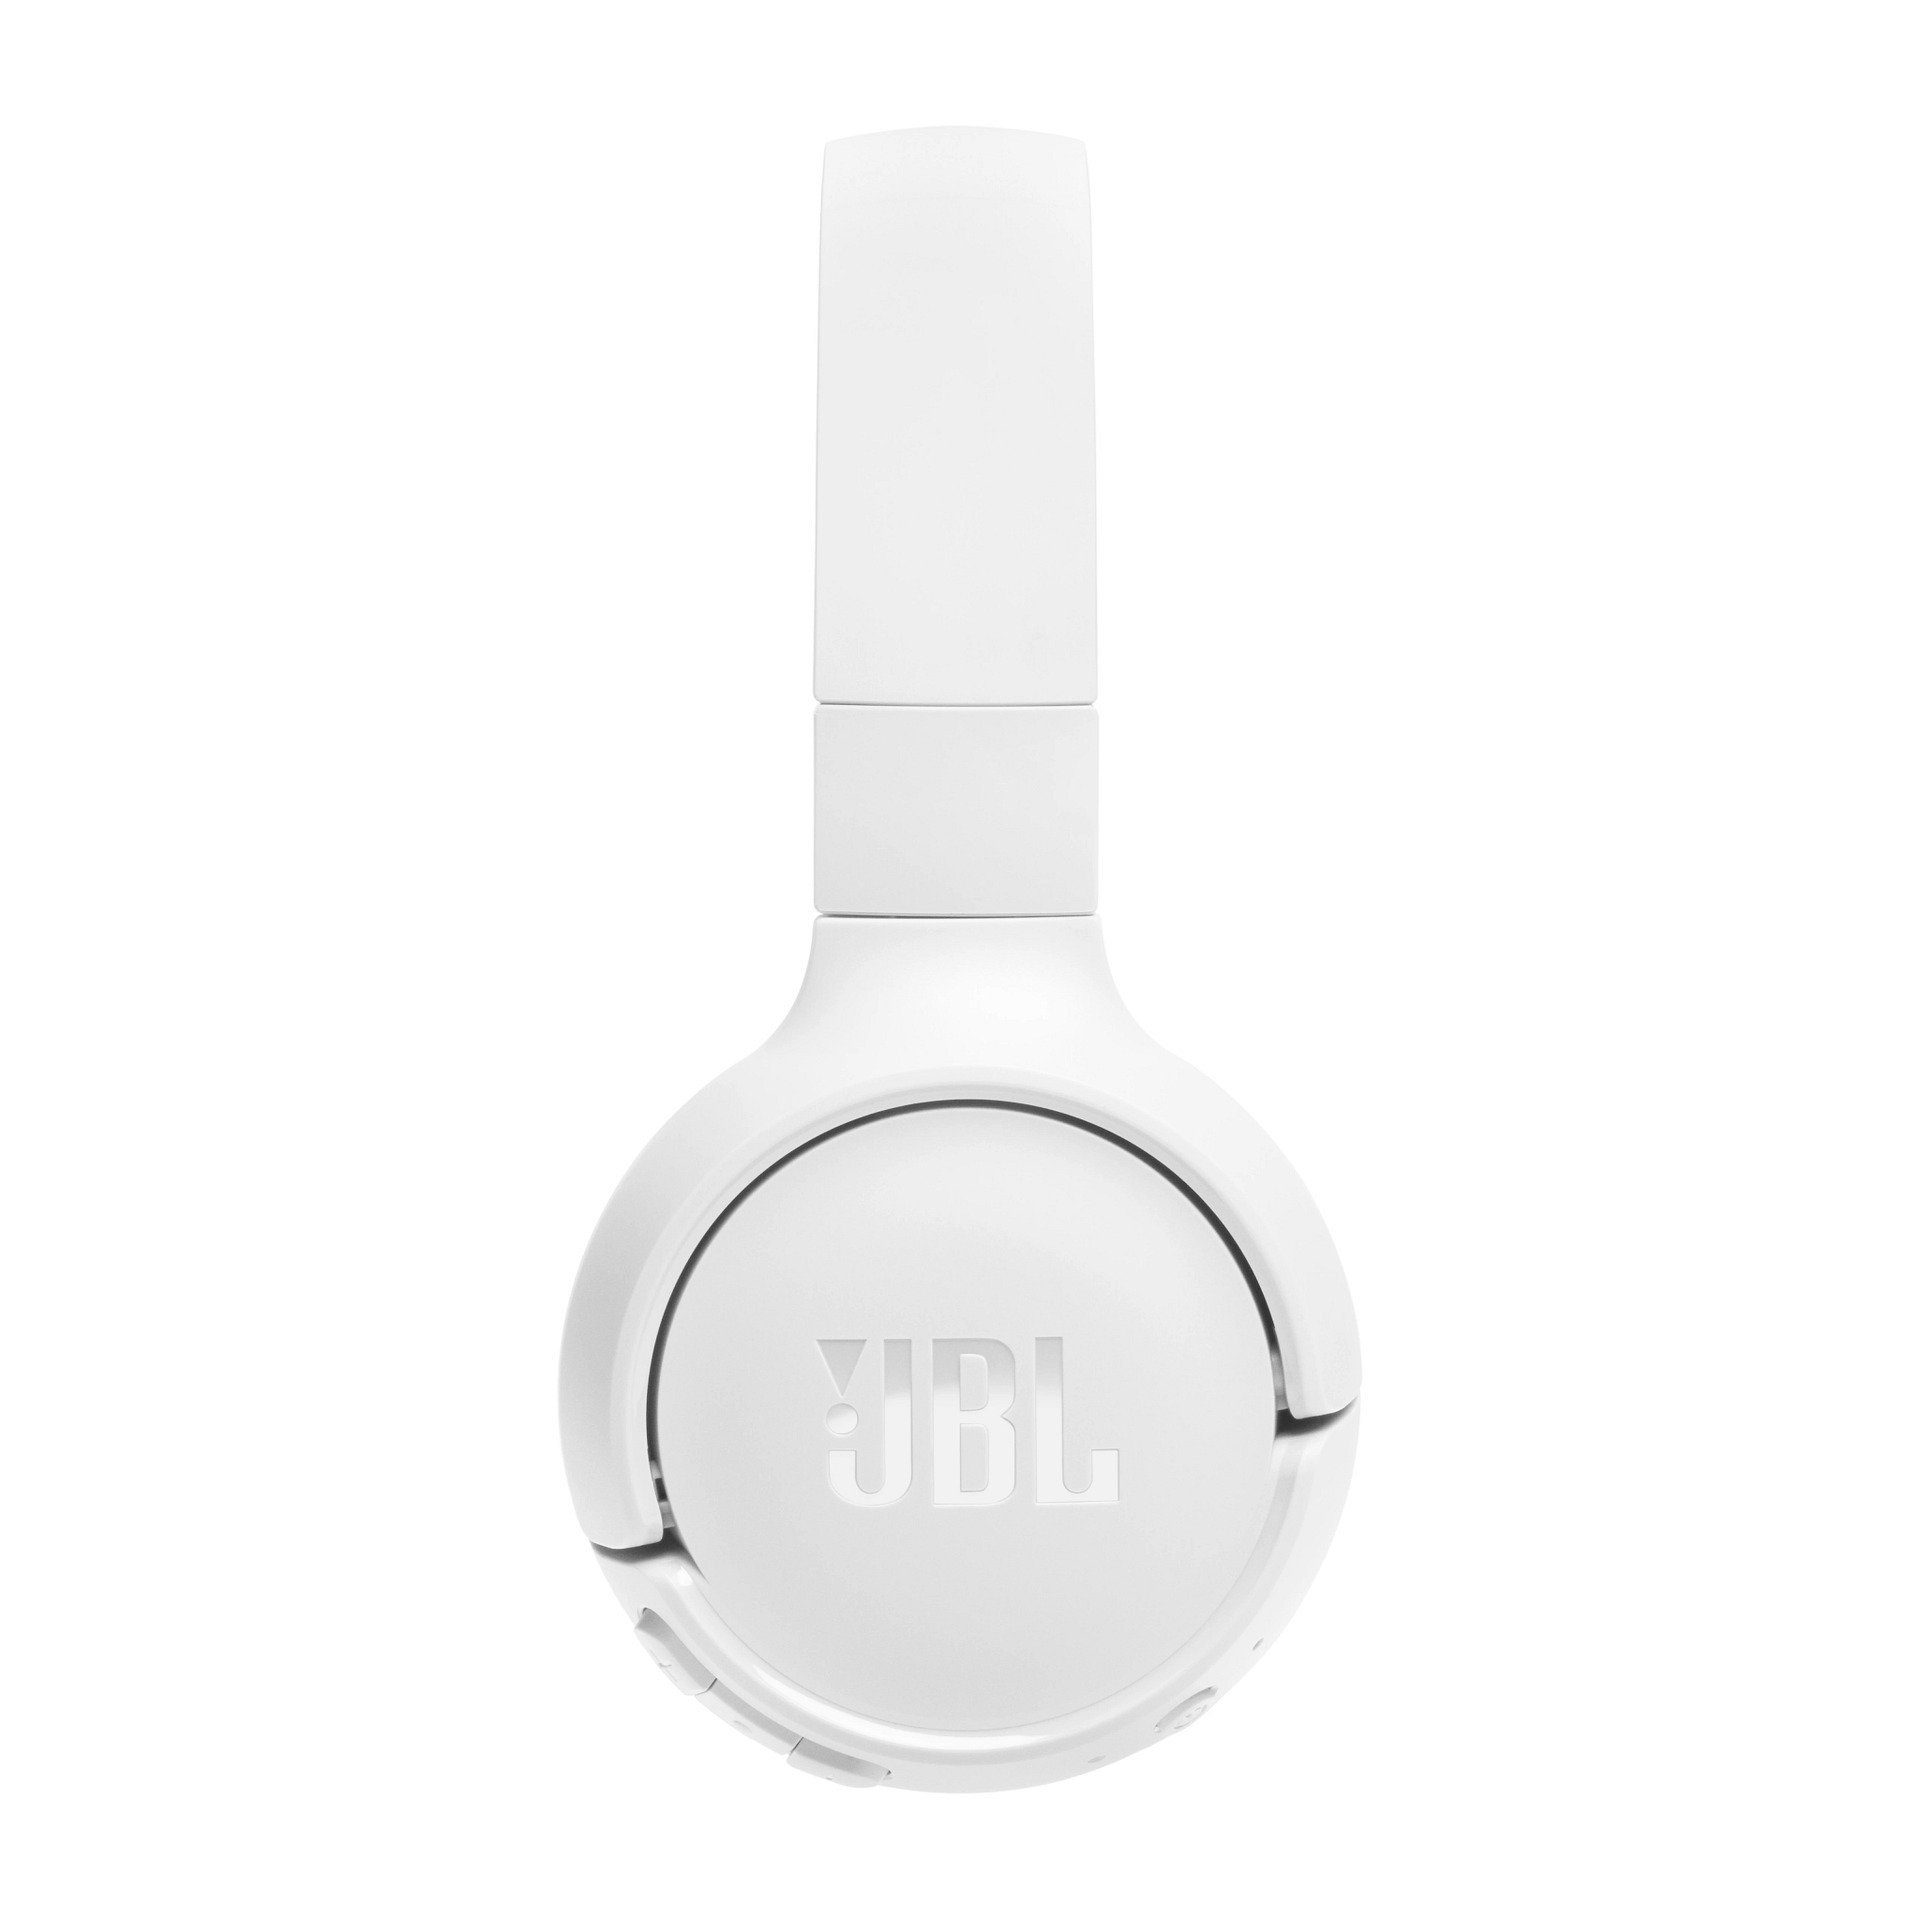 BT JBL Over-Ear-Kopfhörer Weiß 520 Tune